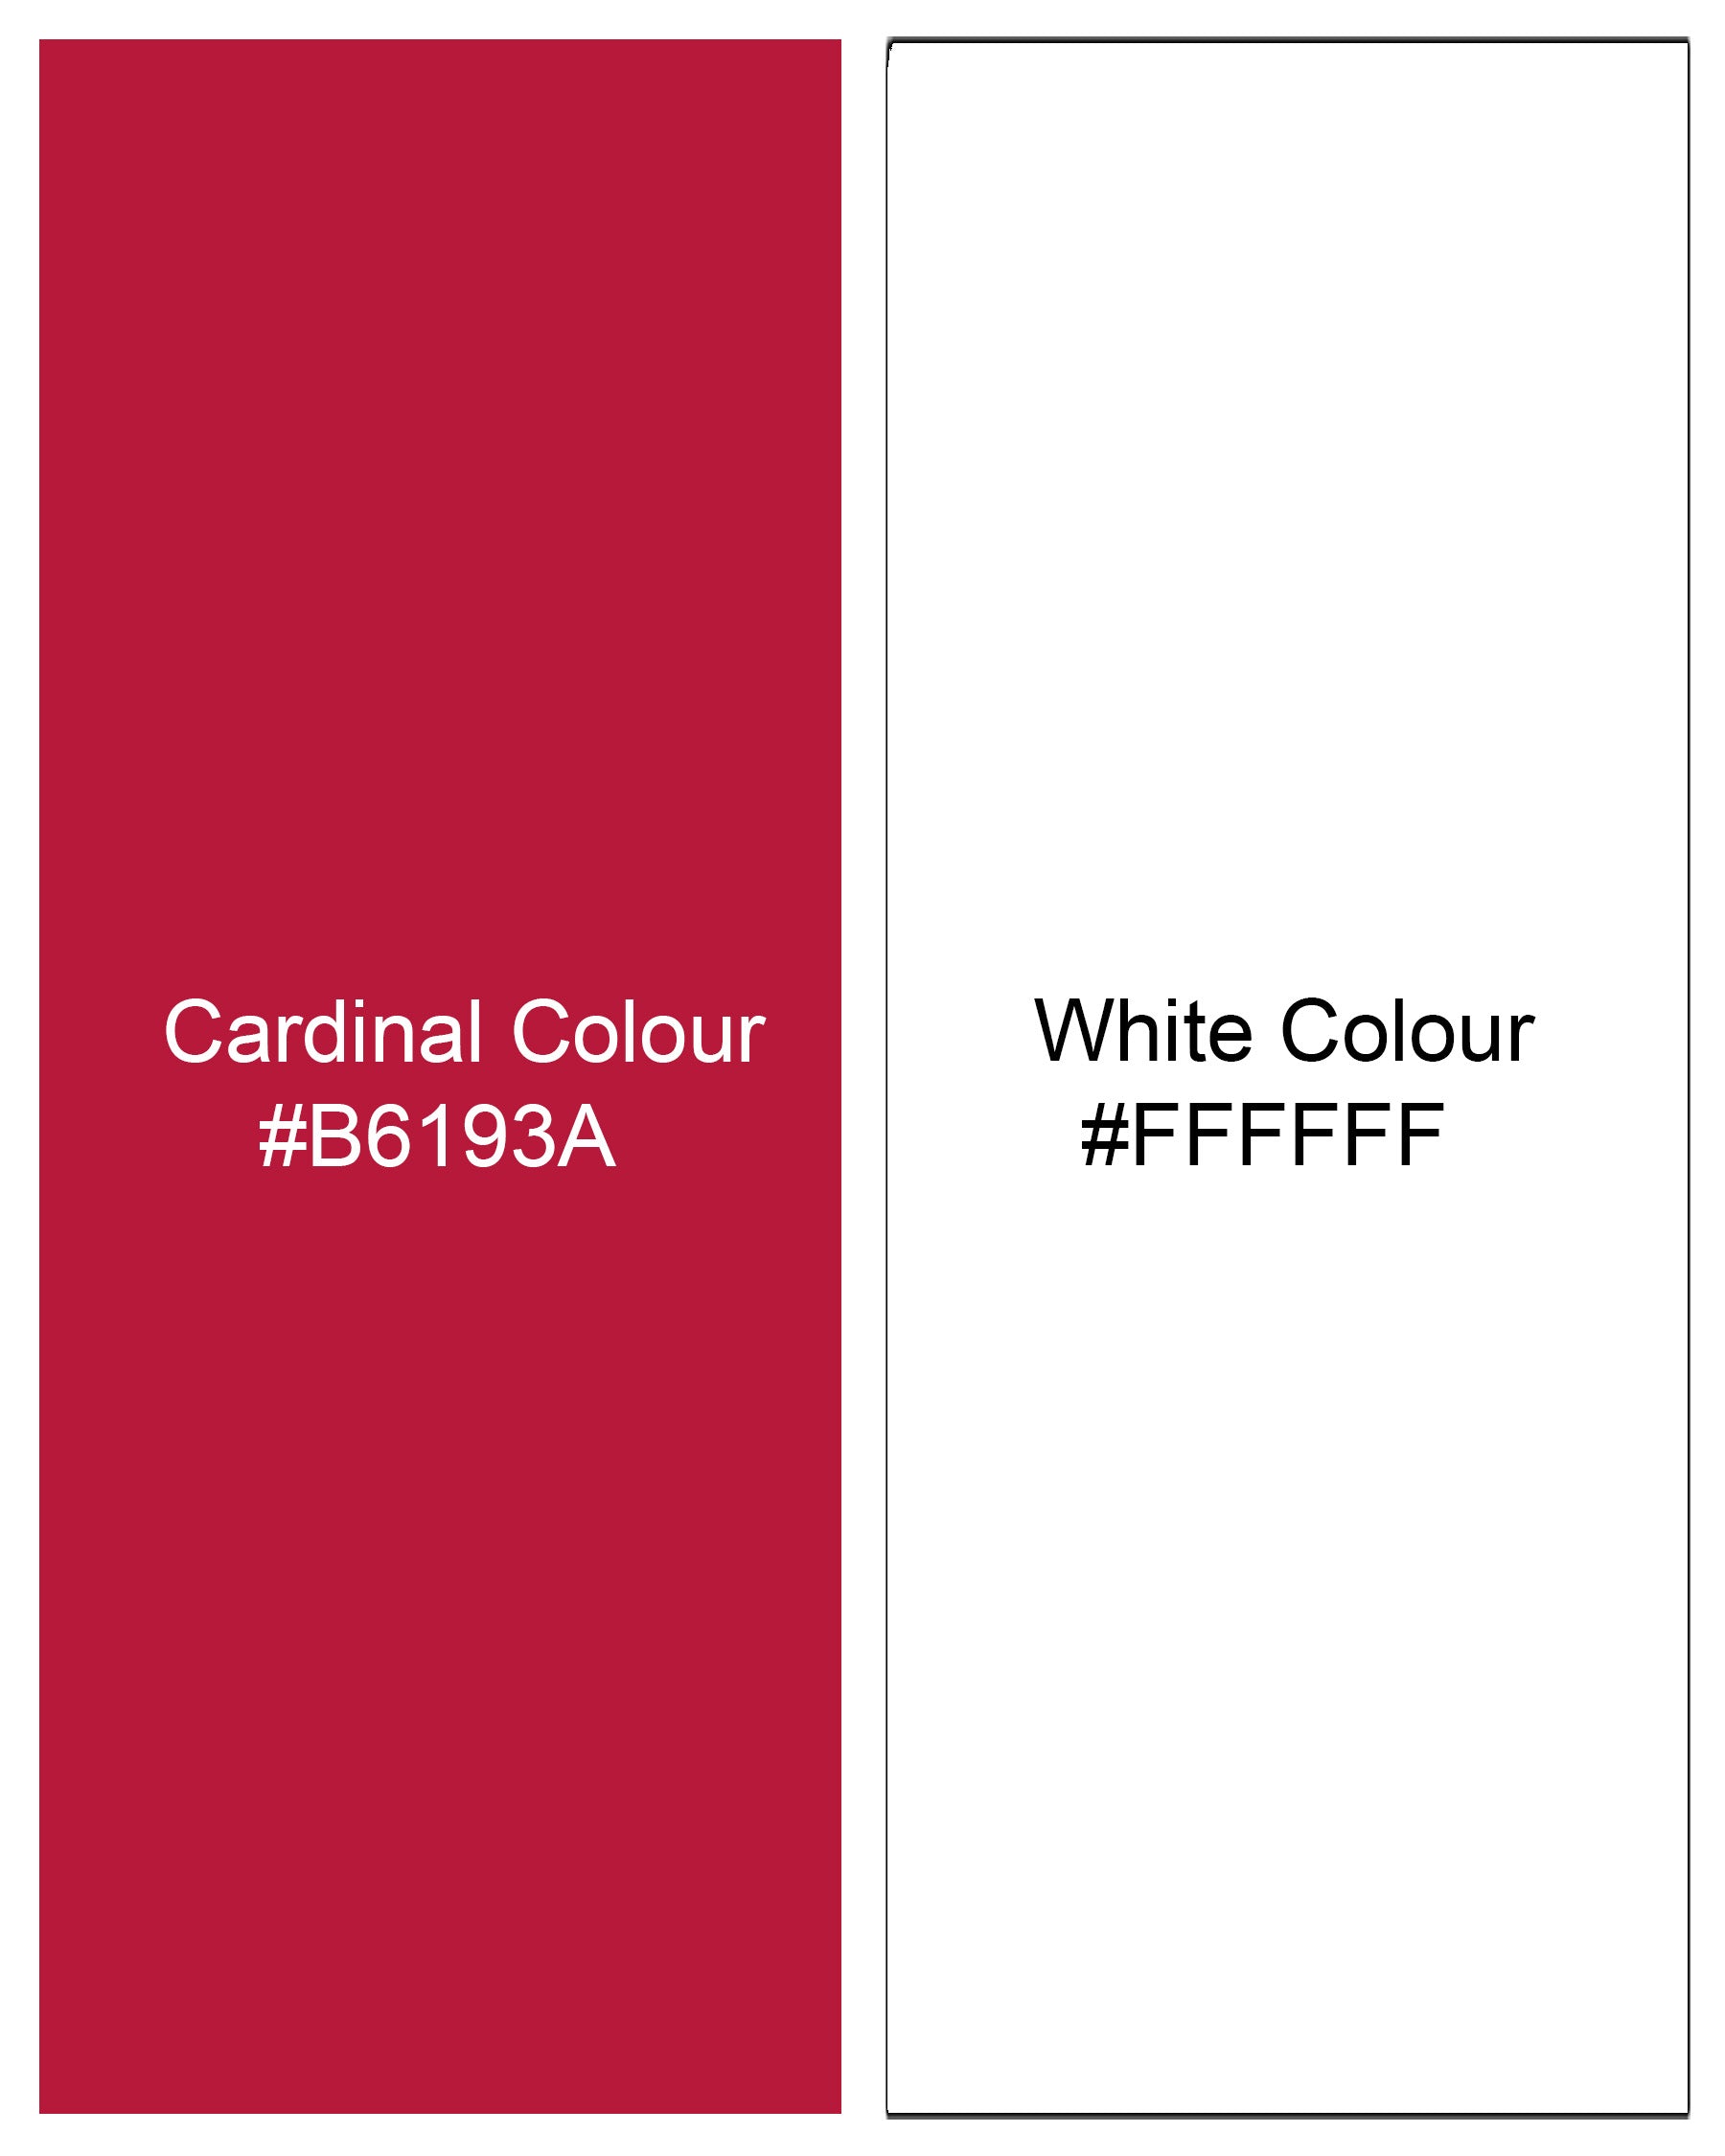 Cardinal Red and White Checked Dobby Textured Premium Giza Cotton Designer Shirt 8200-P113 -38,8200-P113 -H-38,8200-P113 -39,8200-P113 -H-39,8200-P113 -40,8200-P113 -H-40,8200-P113 -42,8200-P113 -H-42,8200-P113 -44,8200-P113 -H-44,8200-P113 -46,8200-P113 -H-46,8200-P113 -48,8200-P113 -H-48,8200-P113 -50,8200-P113 -H-50,8200-P113 -52,8200-P113 -H-52